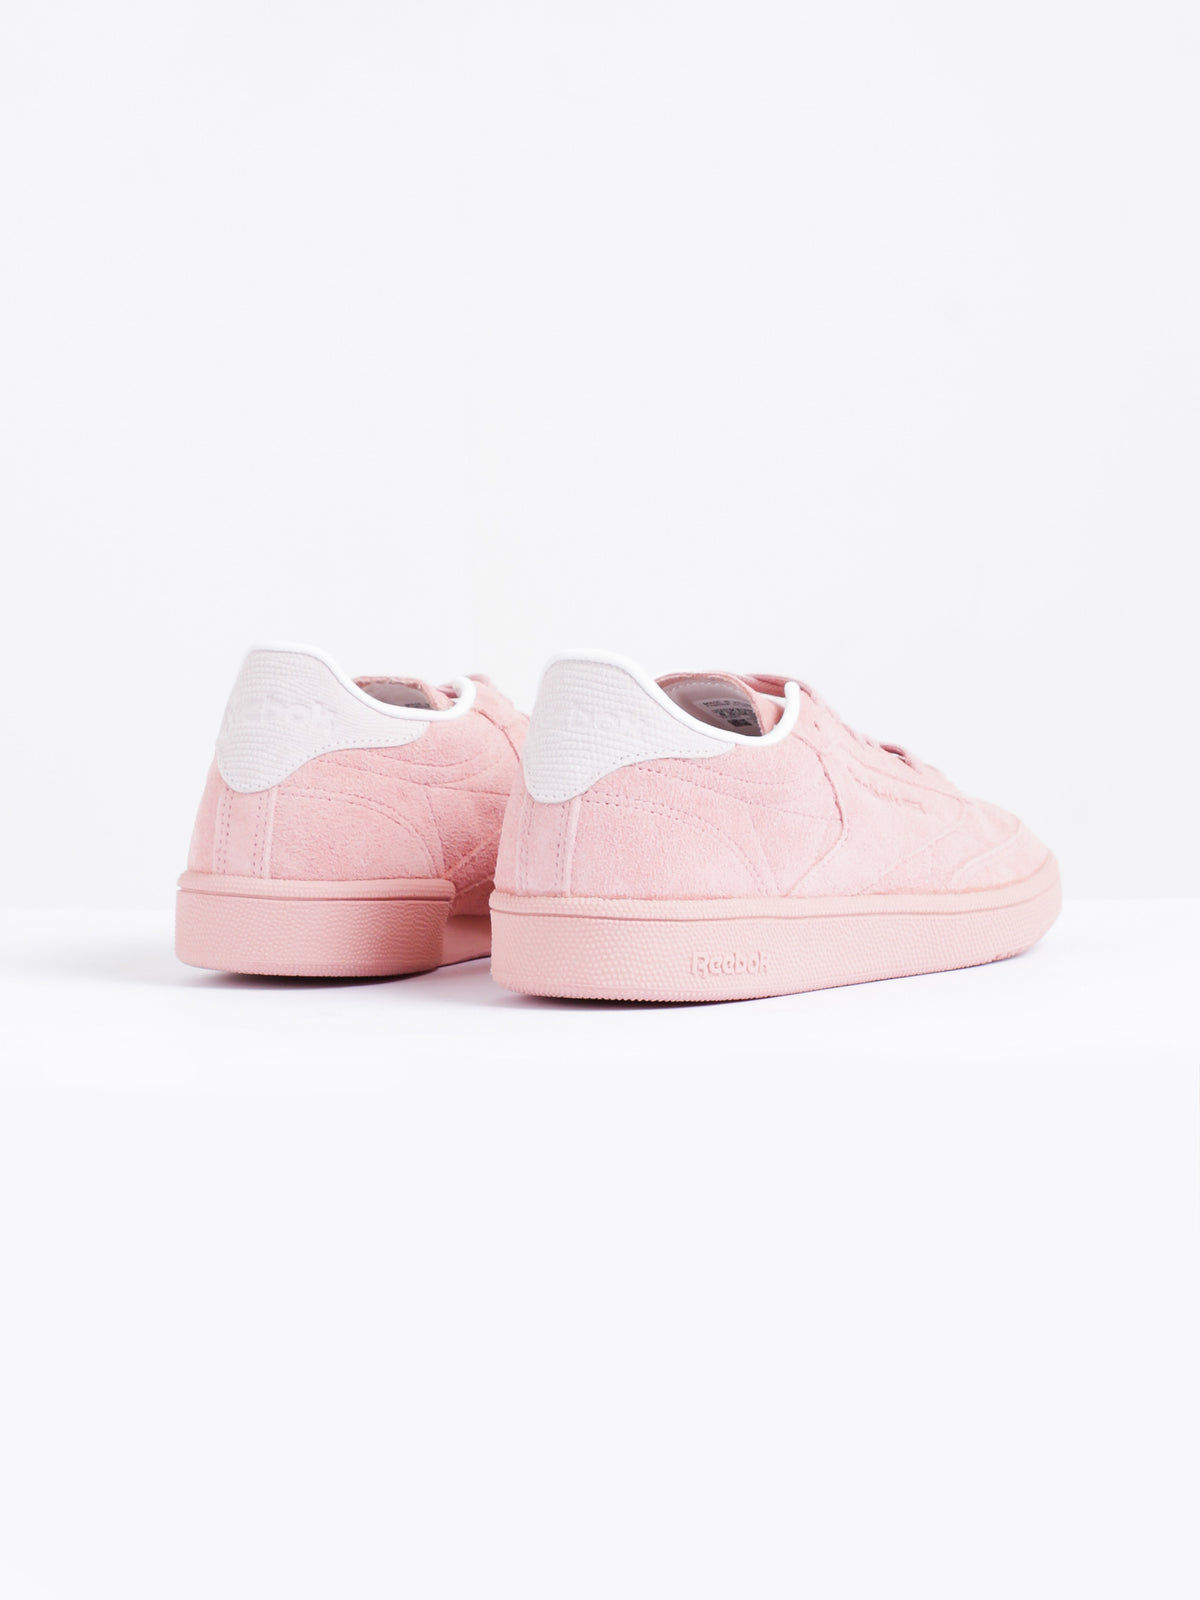 Womens Club C 85 Sneakers in Pink Suede